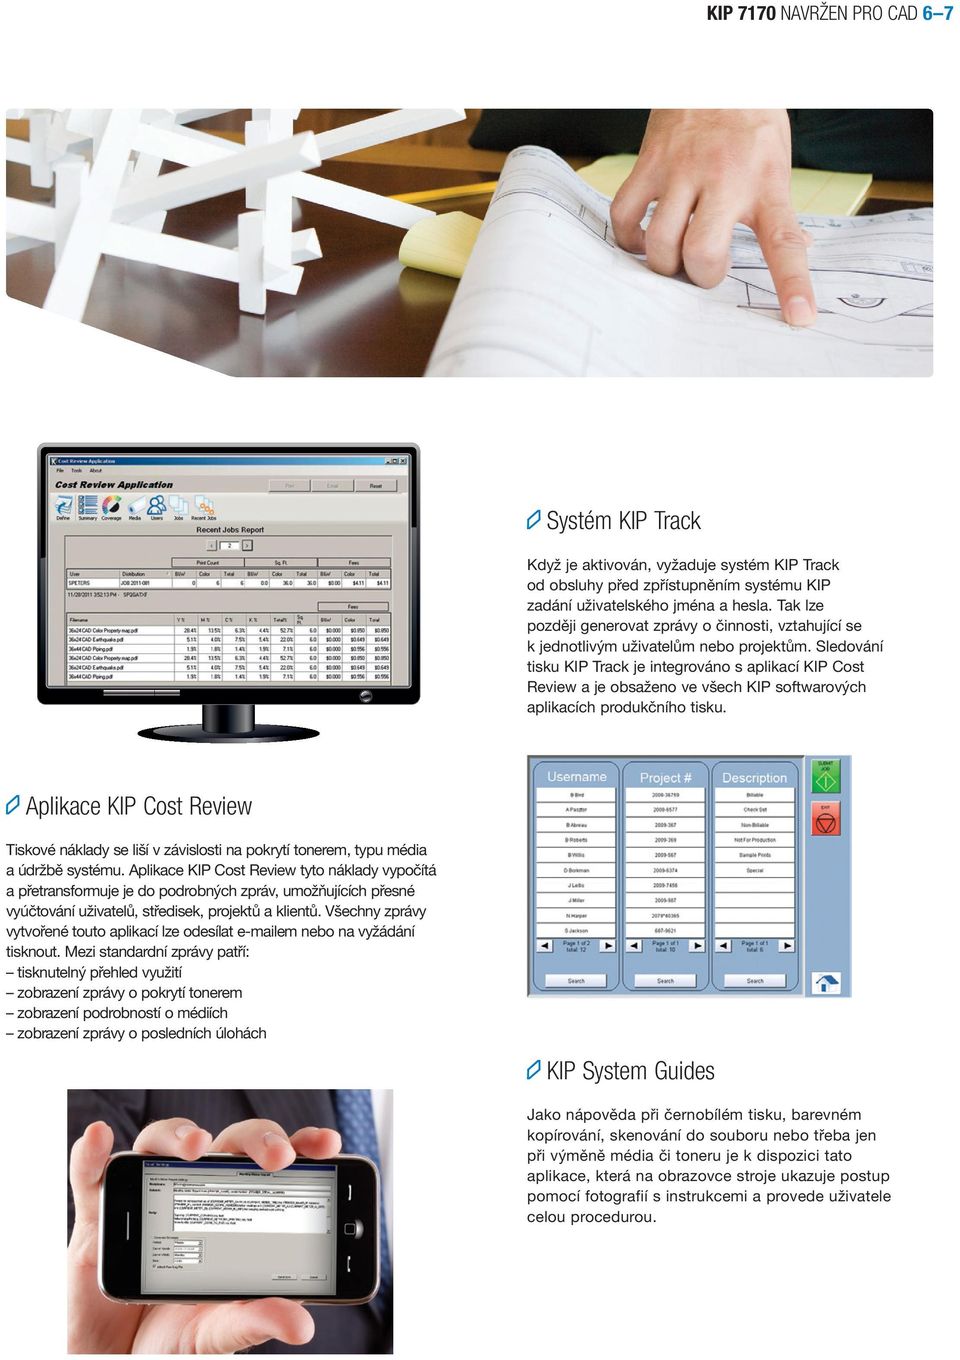 Sledování tisku KIP Track je integrováno s aplikací KIP Cost Review a je obsaženo ve všech KIP softwarových aplikacích produkčního tisku.